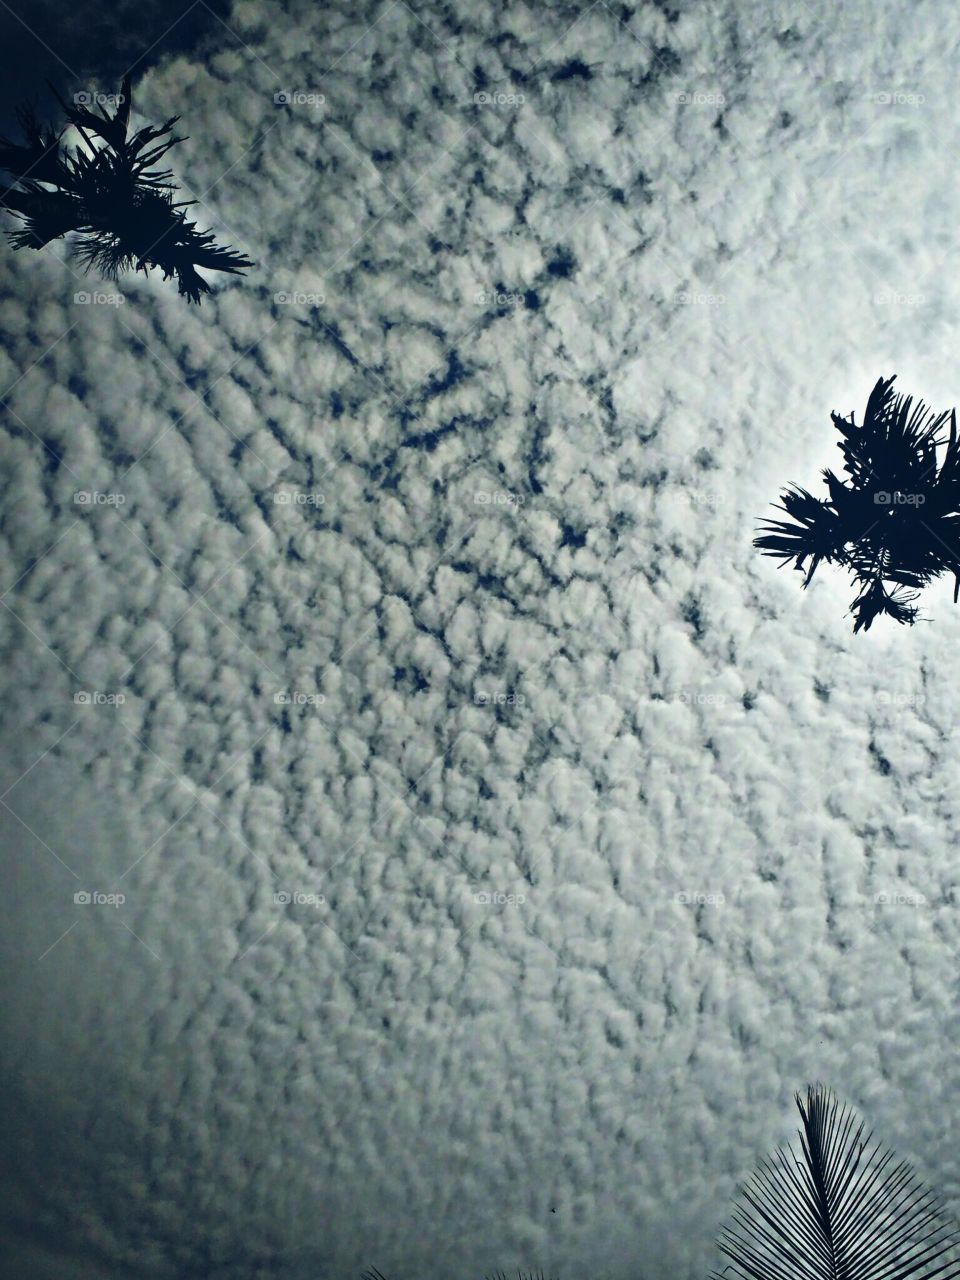 cloud pattern